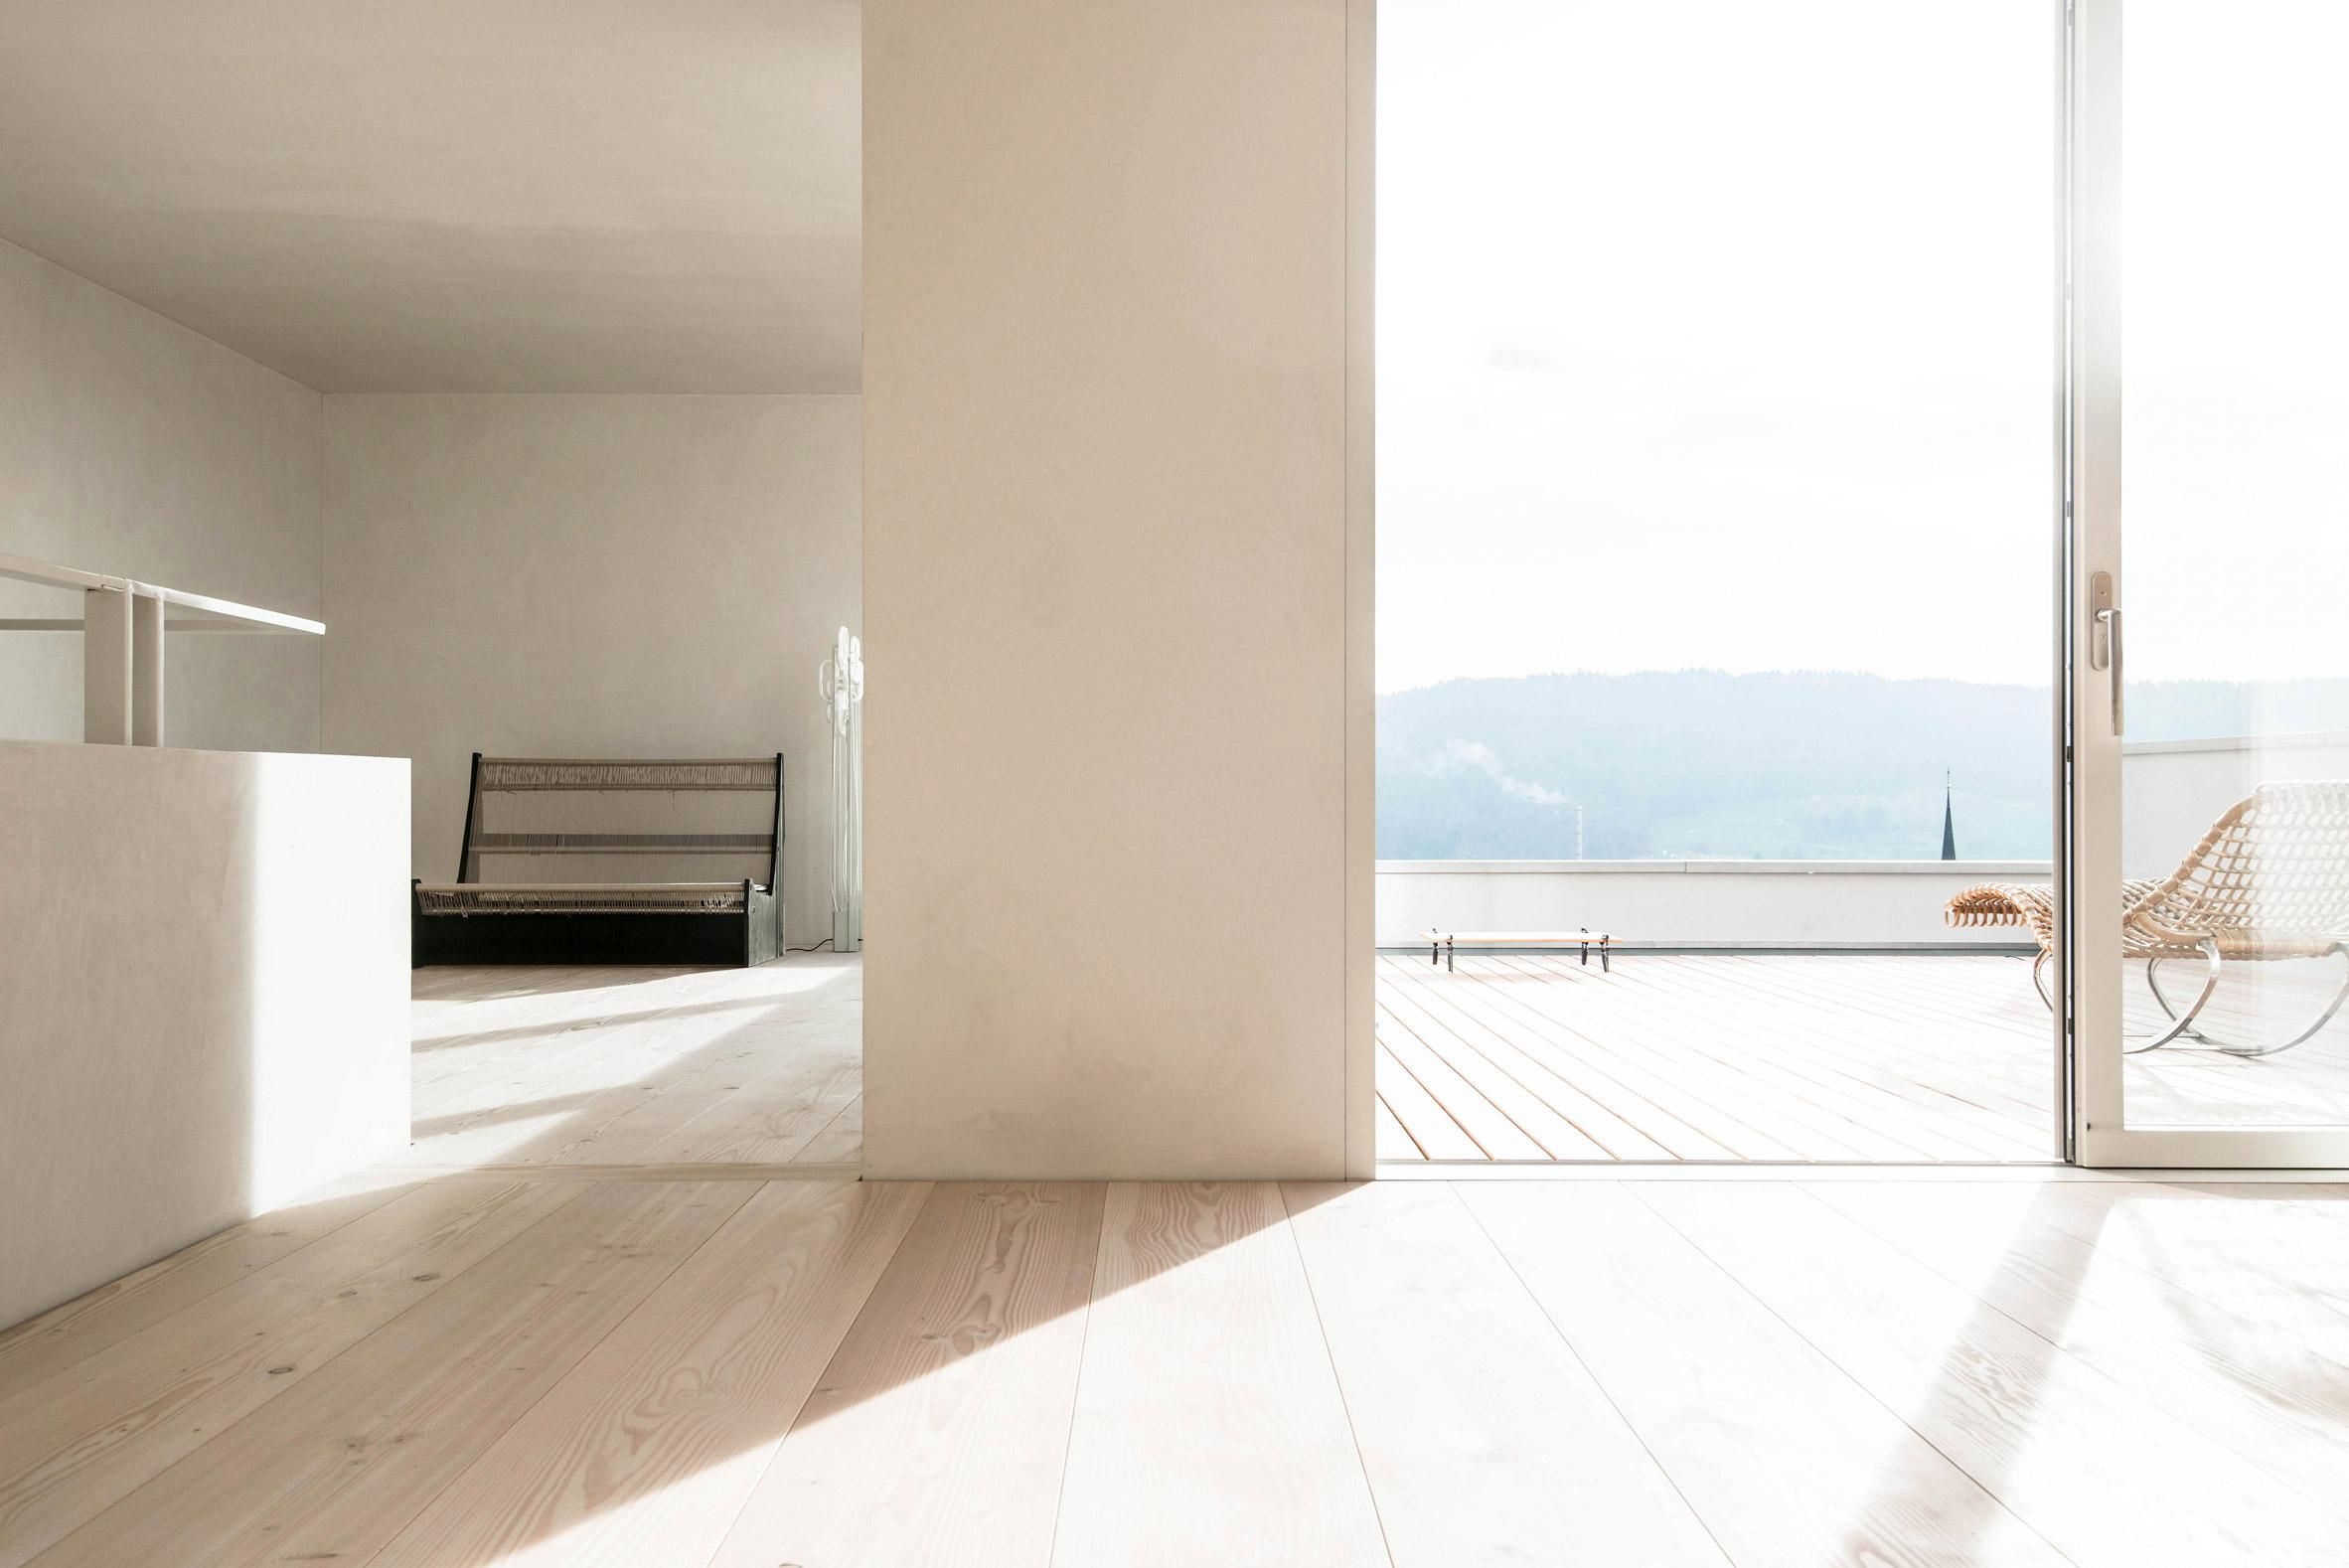 Ні краплі декору: у Швейцарії побудували приватний будинок з суворим дизайном – фото 